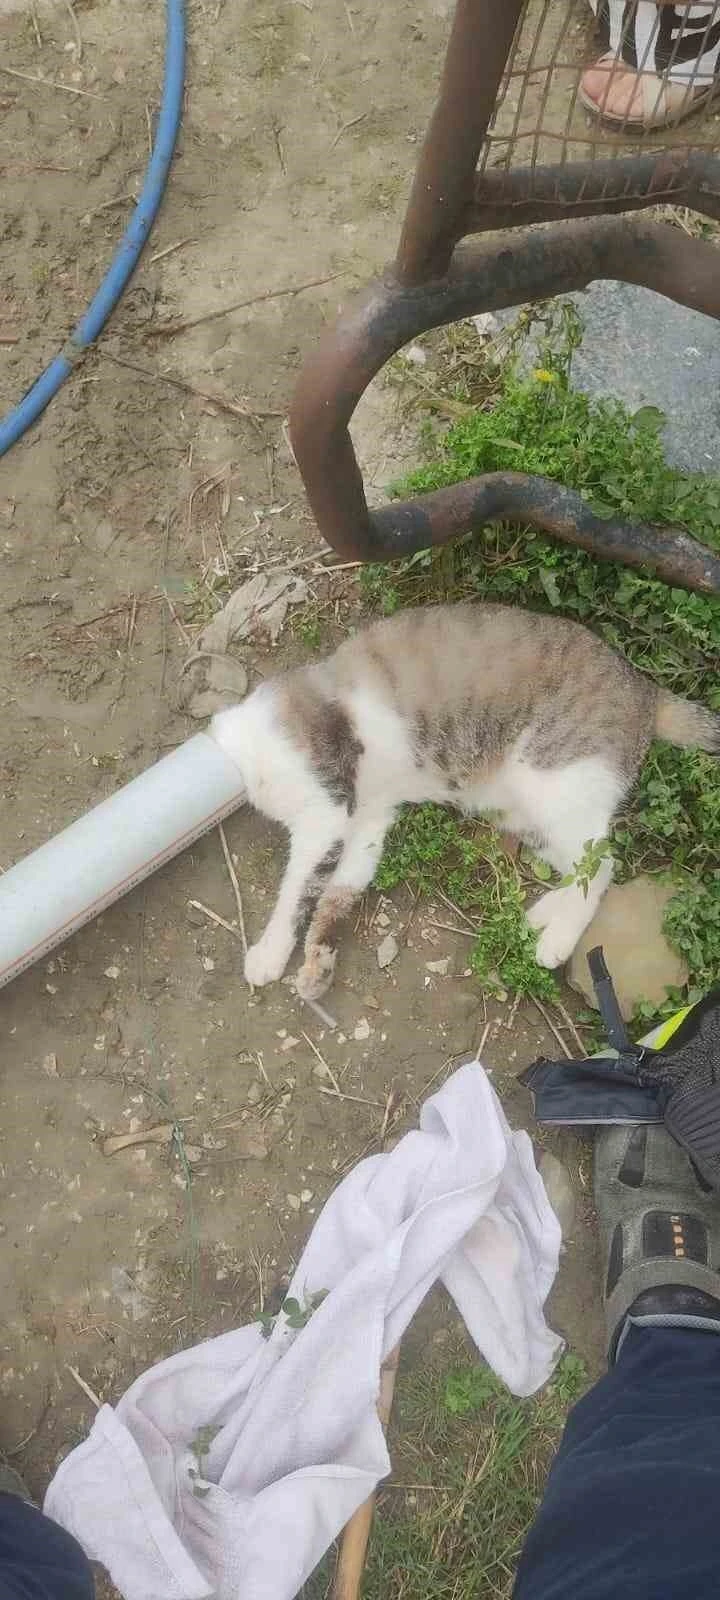 Samandağ’da boruya sıkışan kedi kurtarıldı
